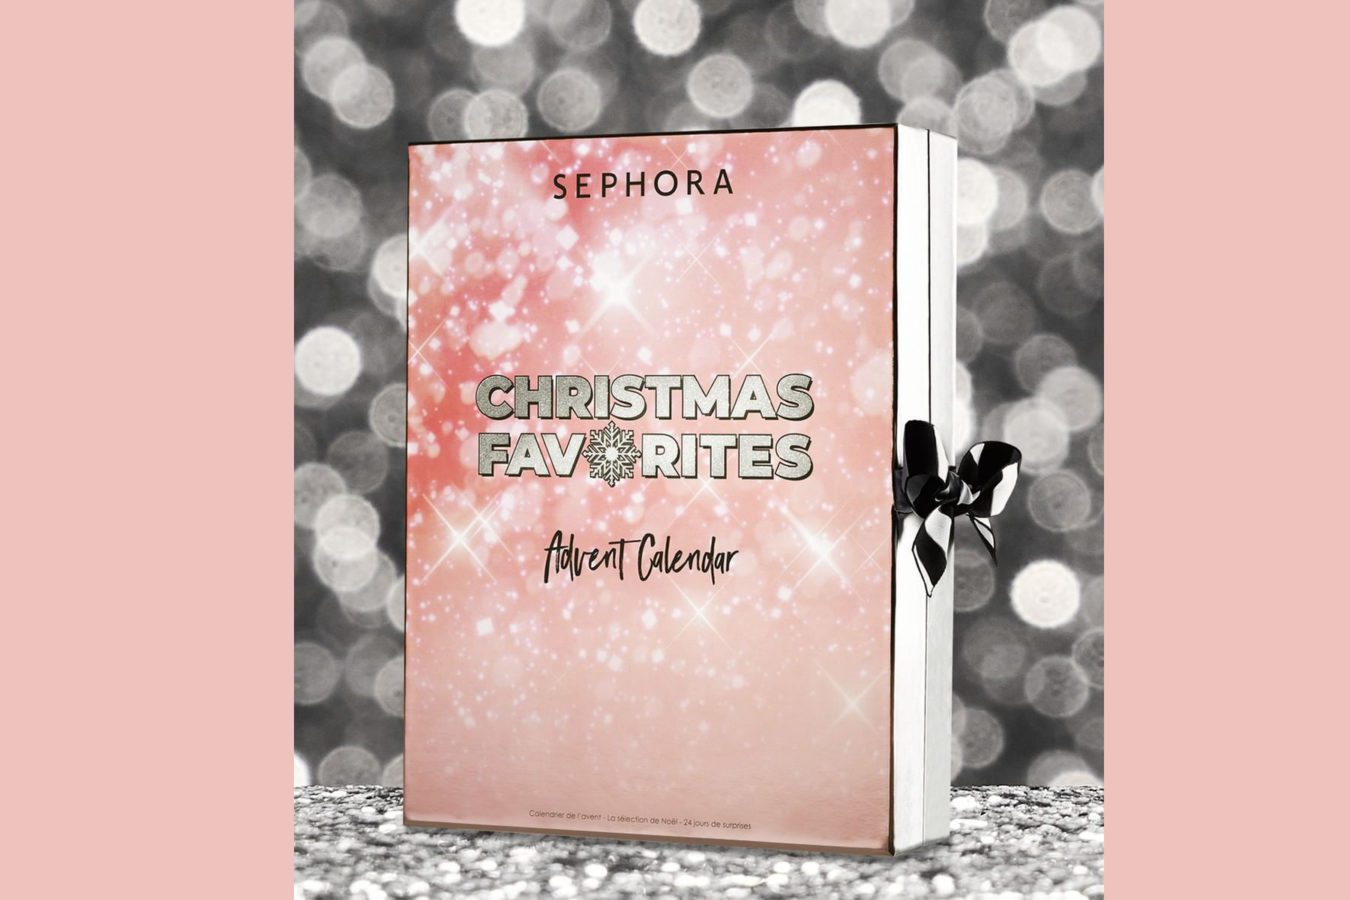 Calendrier de l'Avent Sephora 2019 Christmas Favorites : quel est son